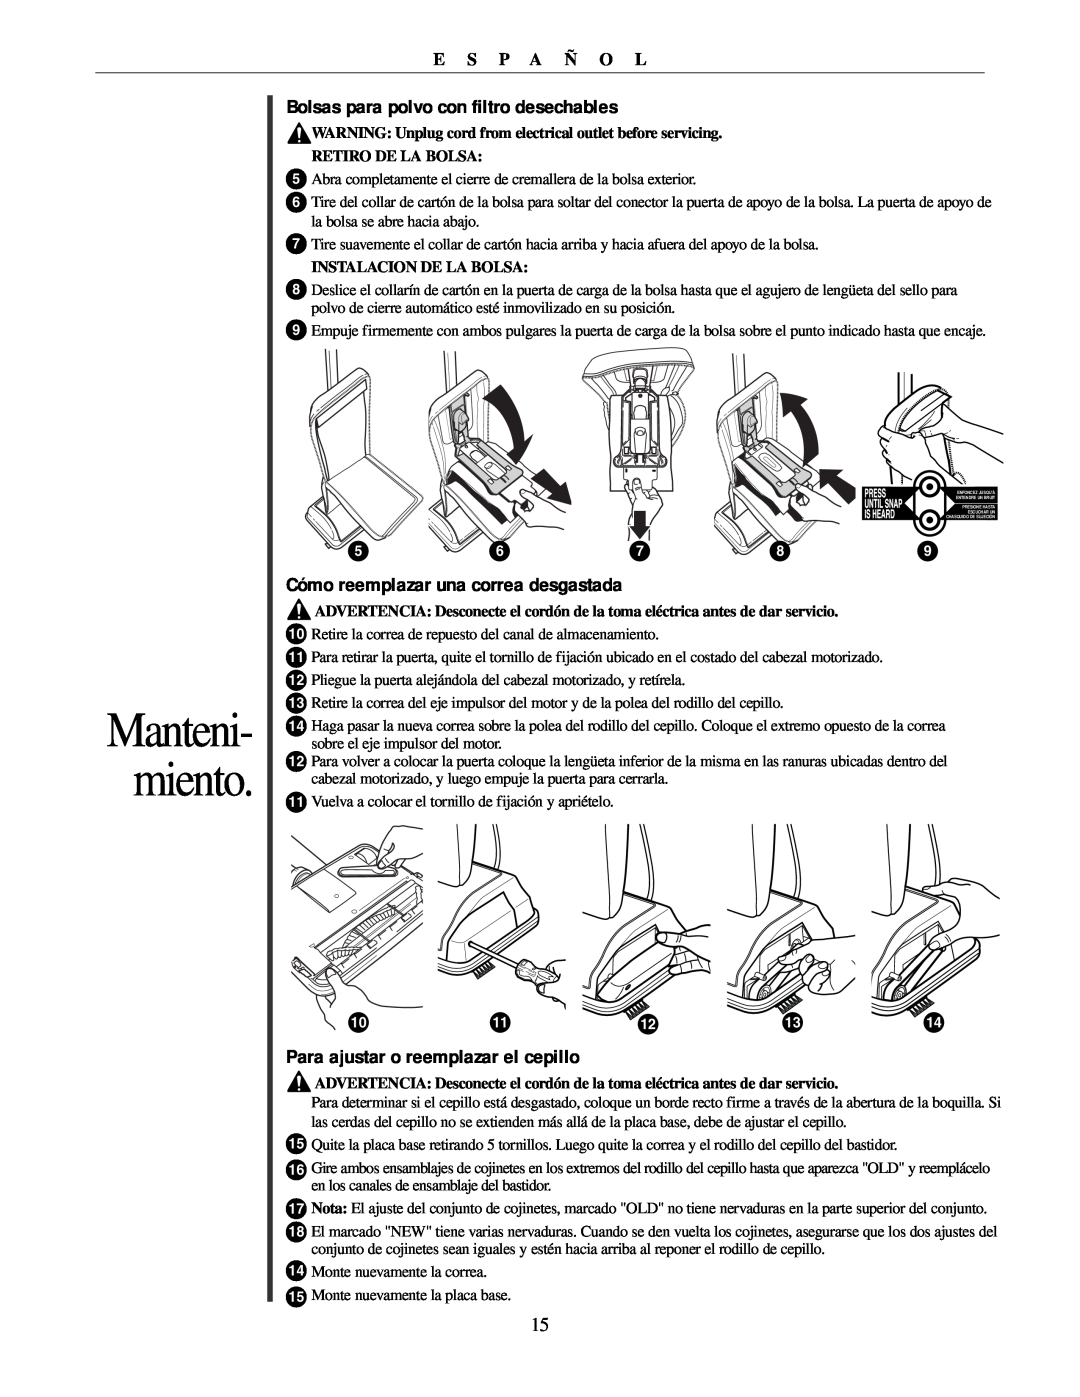 Oreck U2251 manual Cómo reemplazar una correa desgastada, Manteni- miento, Bolsas para polvo con filtro desechables 